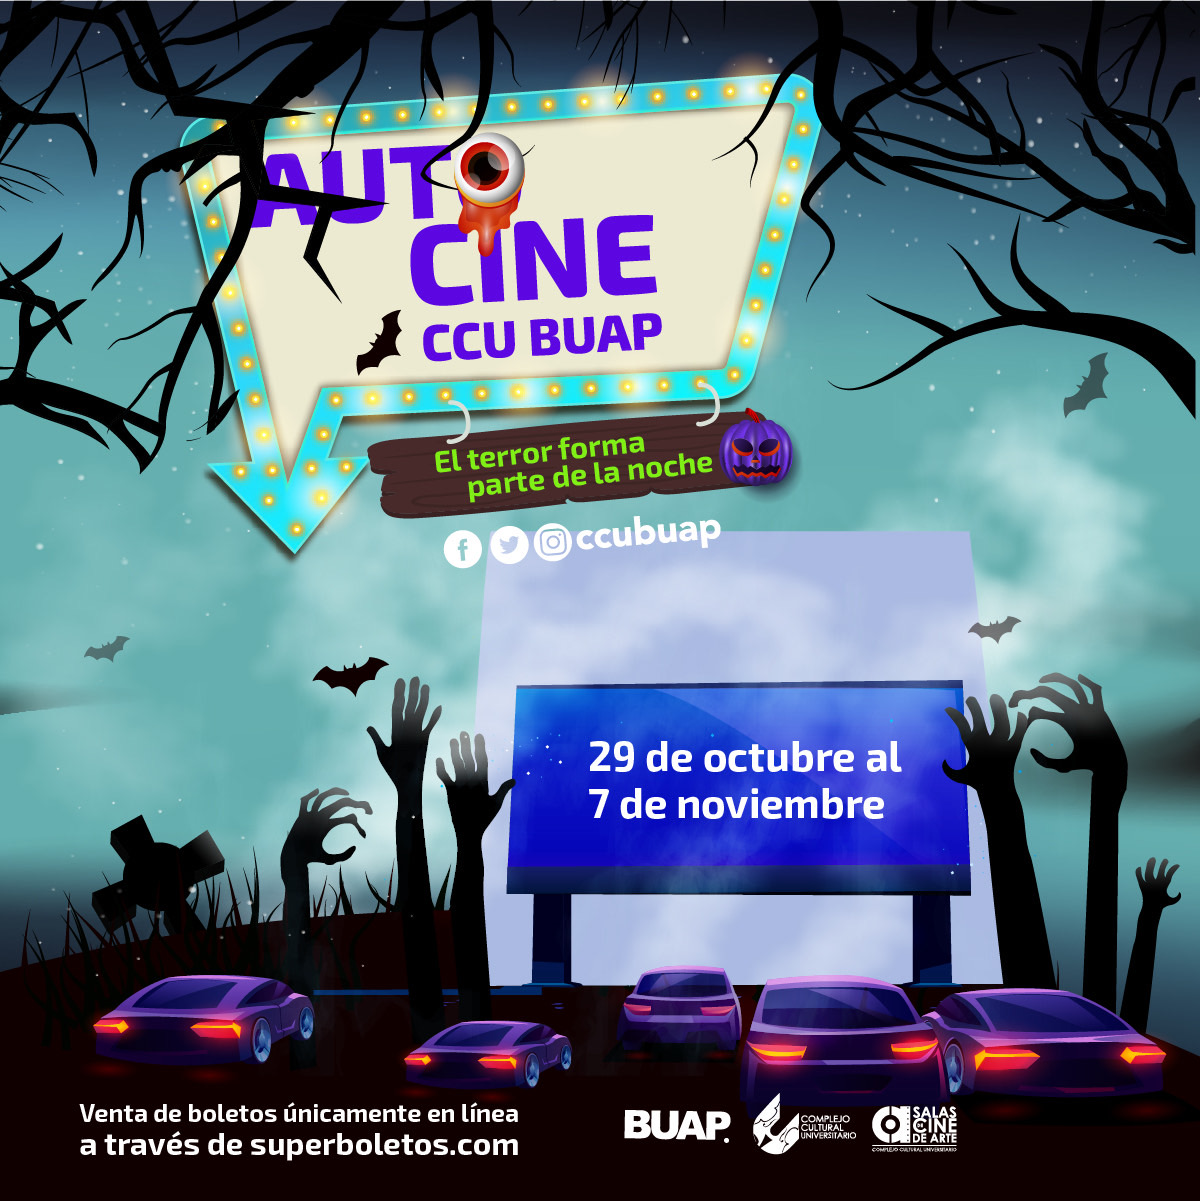 CCU BUAP anuncia actividades para Día de muertos